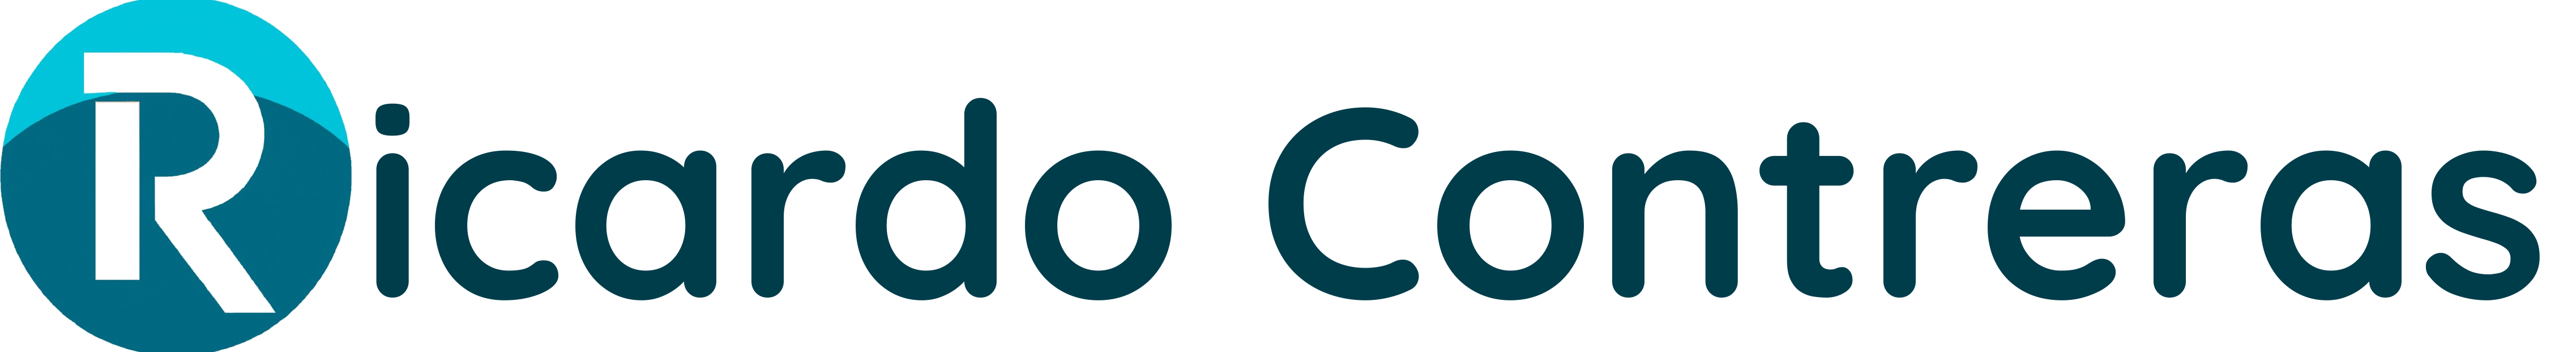 Programación Web logo